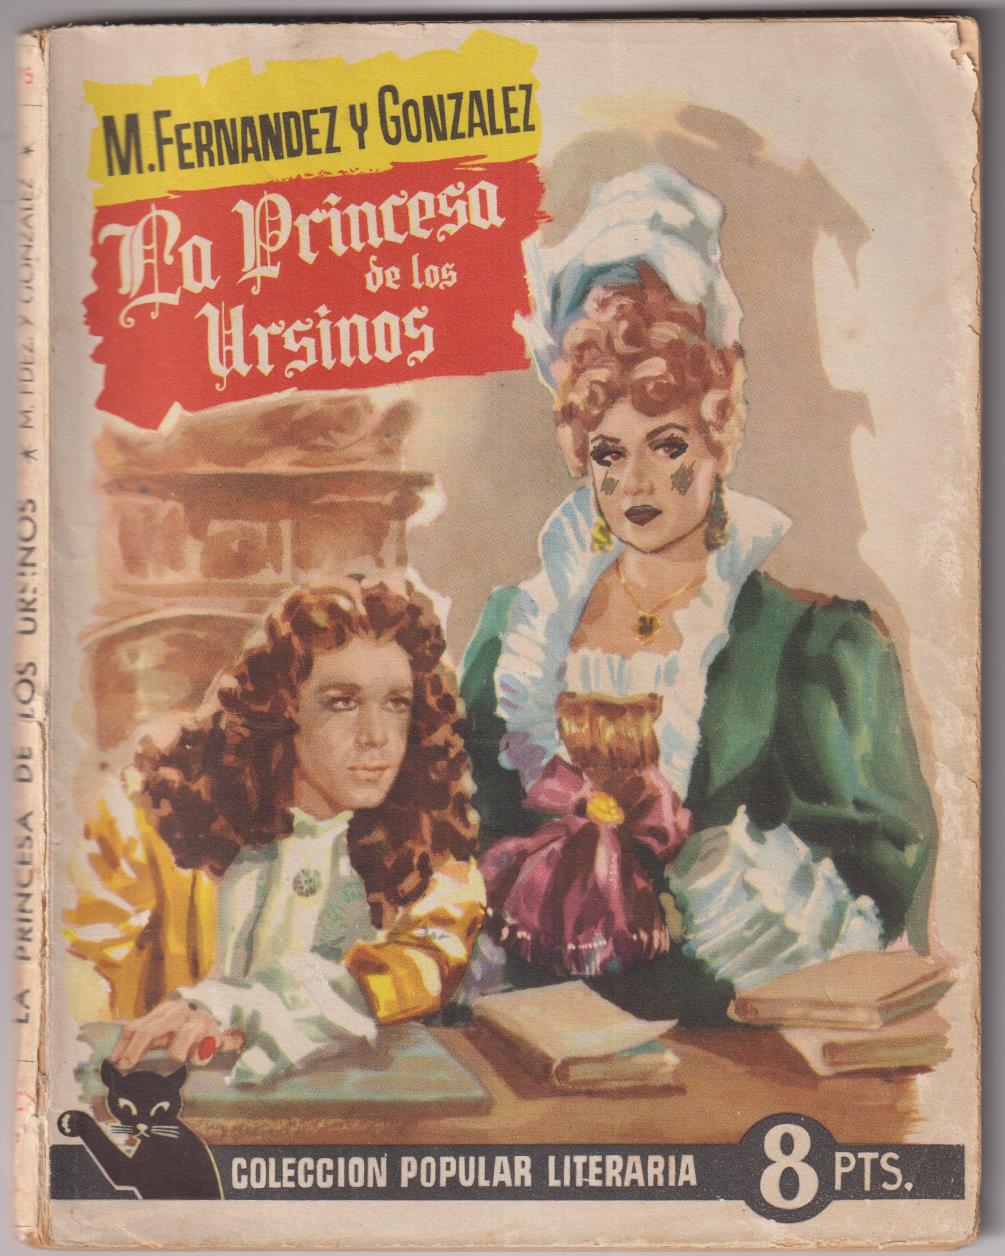 C. popular Literaria nº 5. M. Fernández y González. La Princesa de los Ursinos,  Año 1955